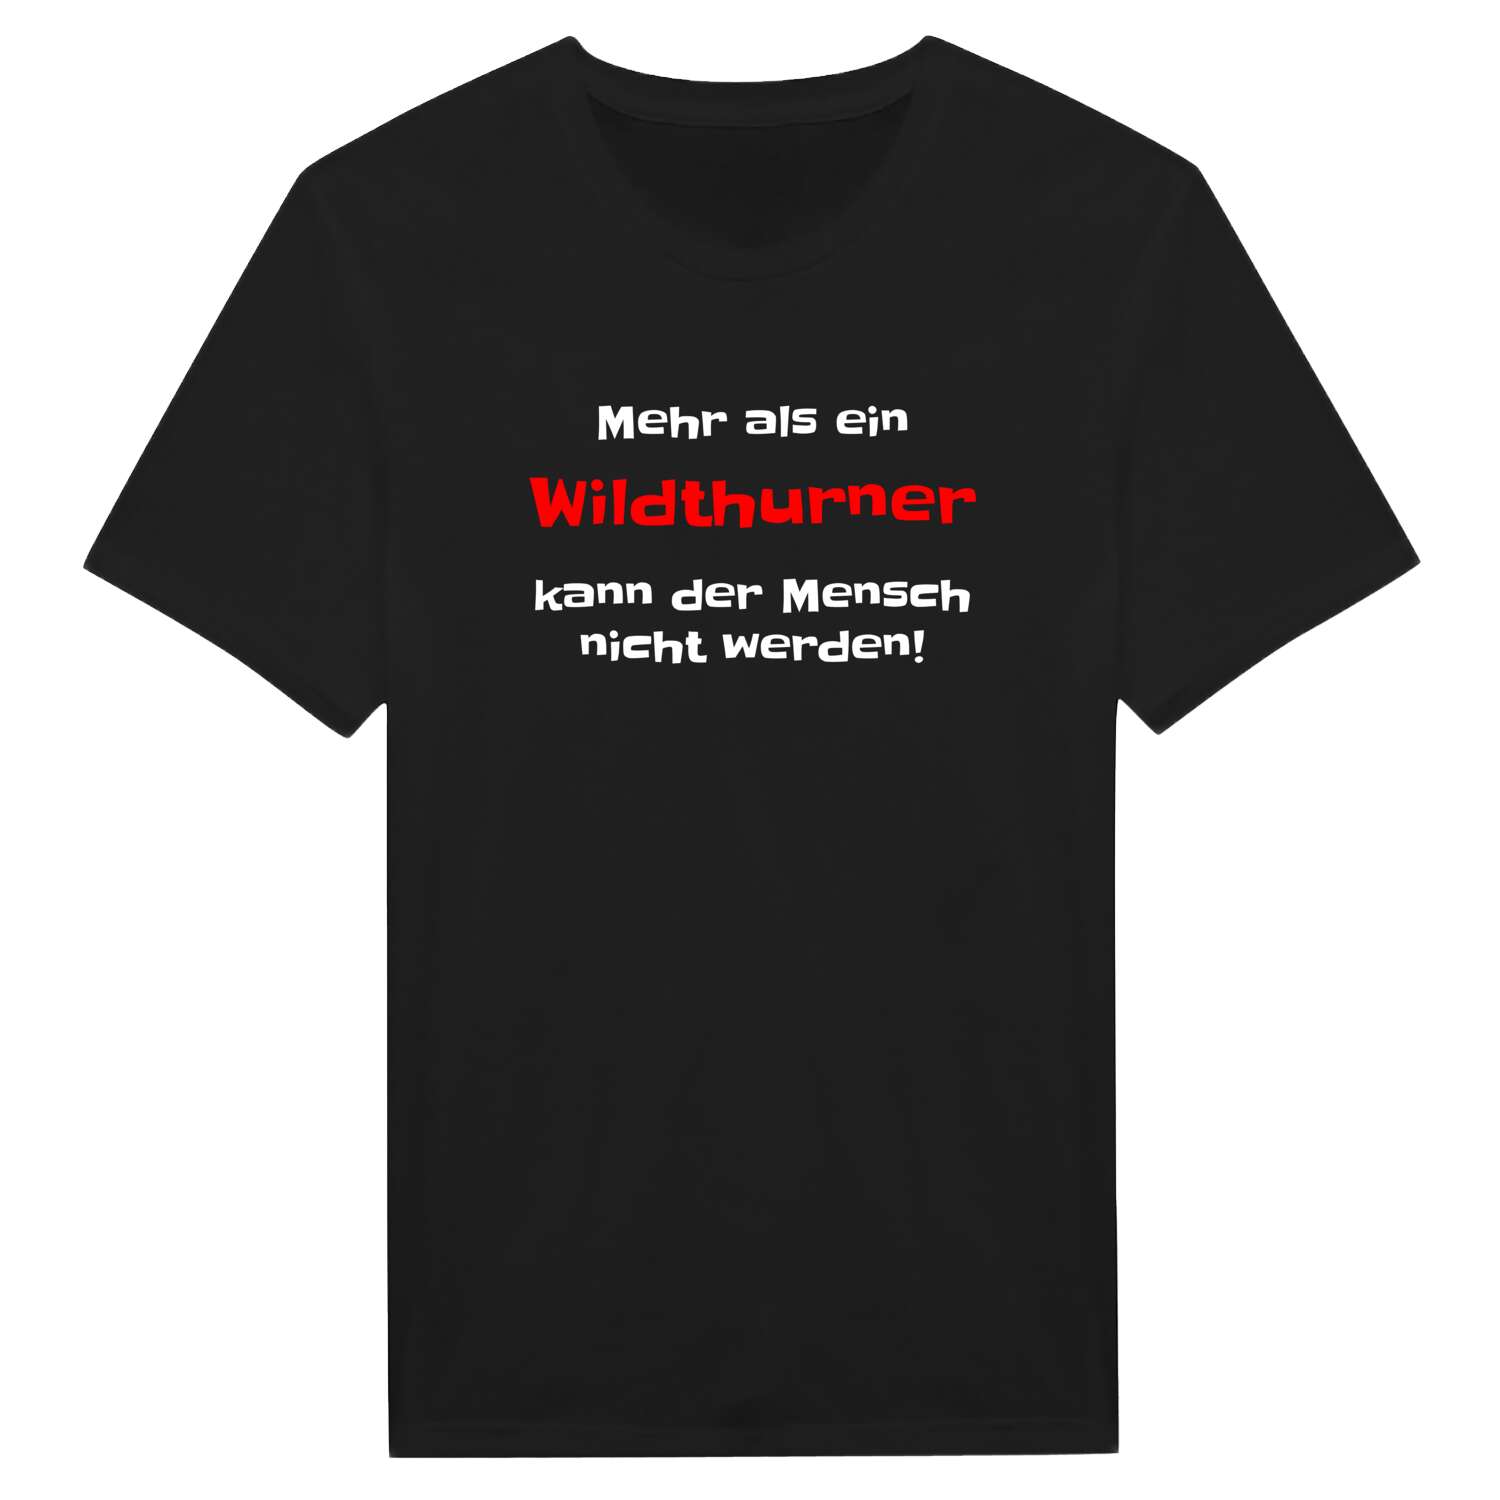 Wildthurn T-Shirt »Mehr als ein«